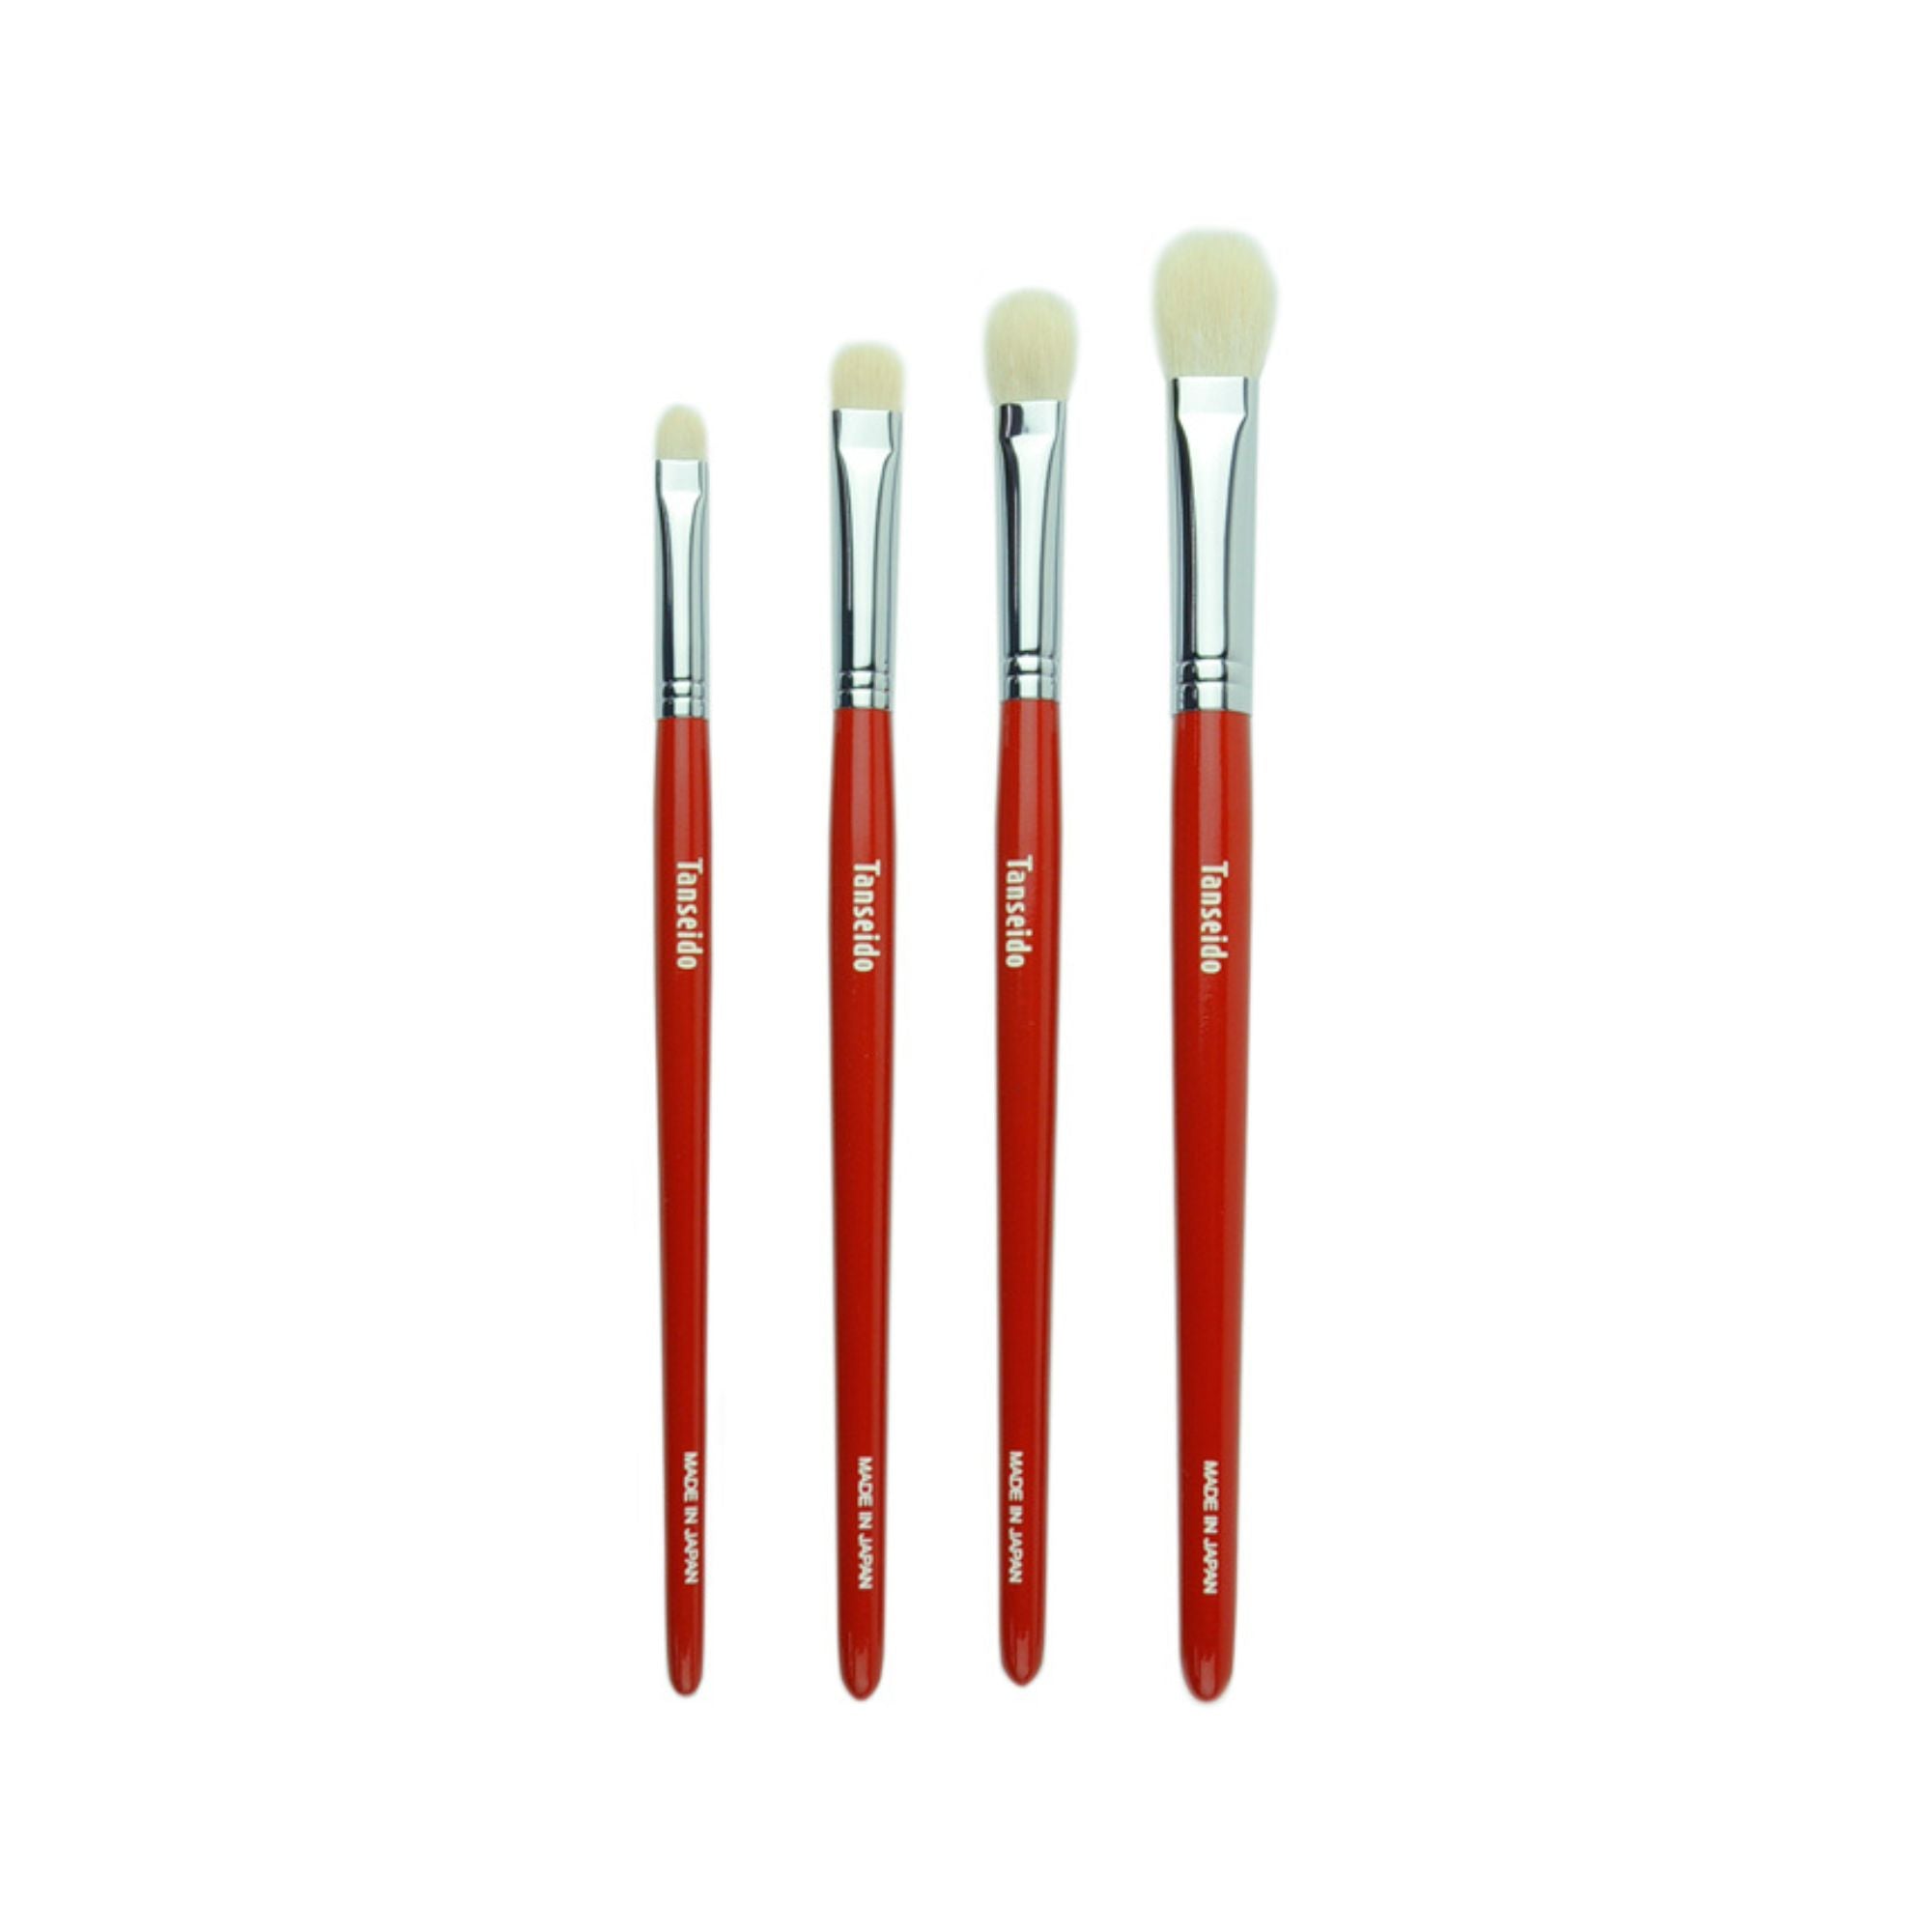 Tanseido 4 x Eyeshadow Brush Set - Fude Beauty, Japanese Makeup Brushes